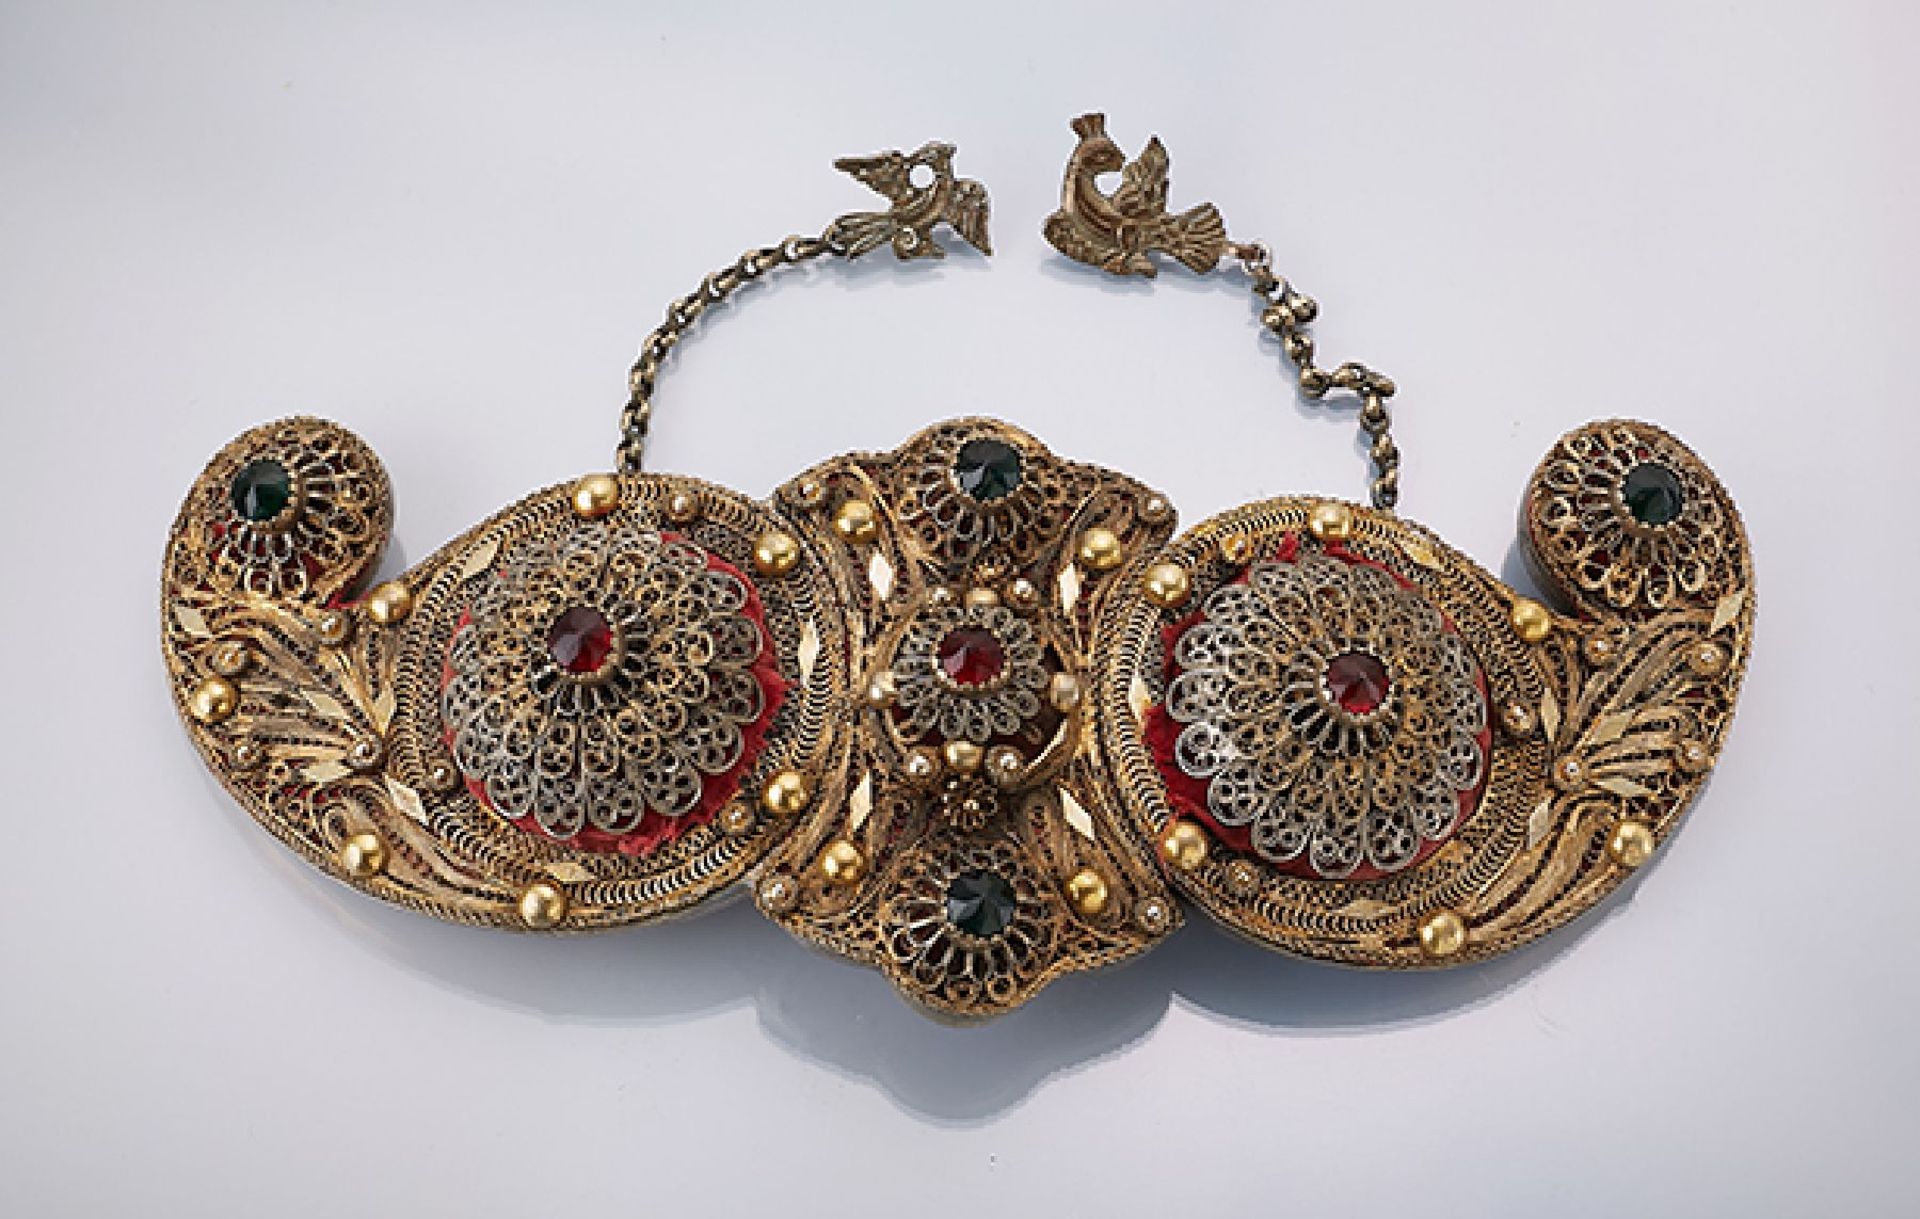 Prunkgürtel mit Straßbesatz, Osmanisch um 1830/50, Filigranarbeit, mit Granulaten, roter und